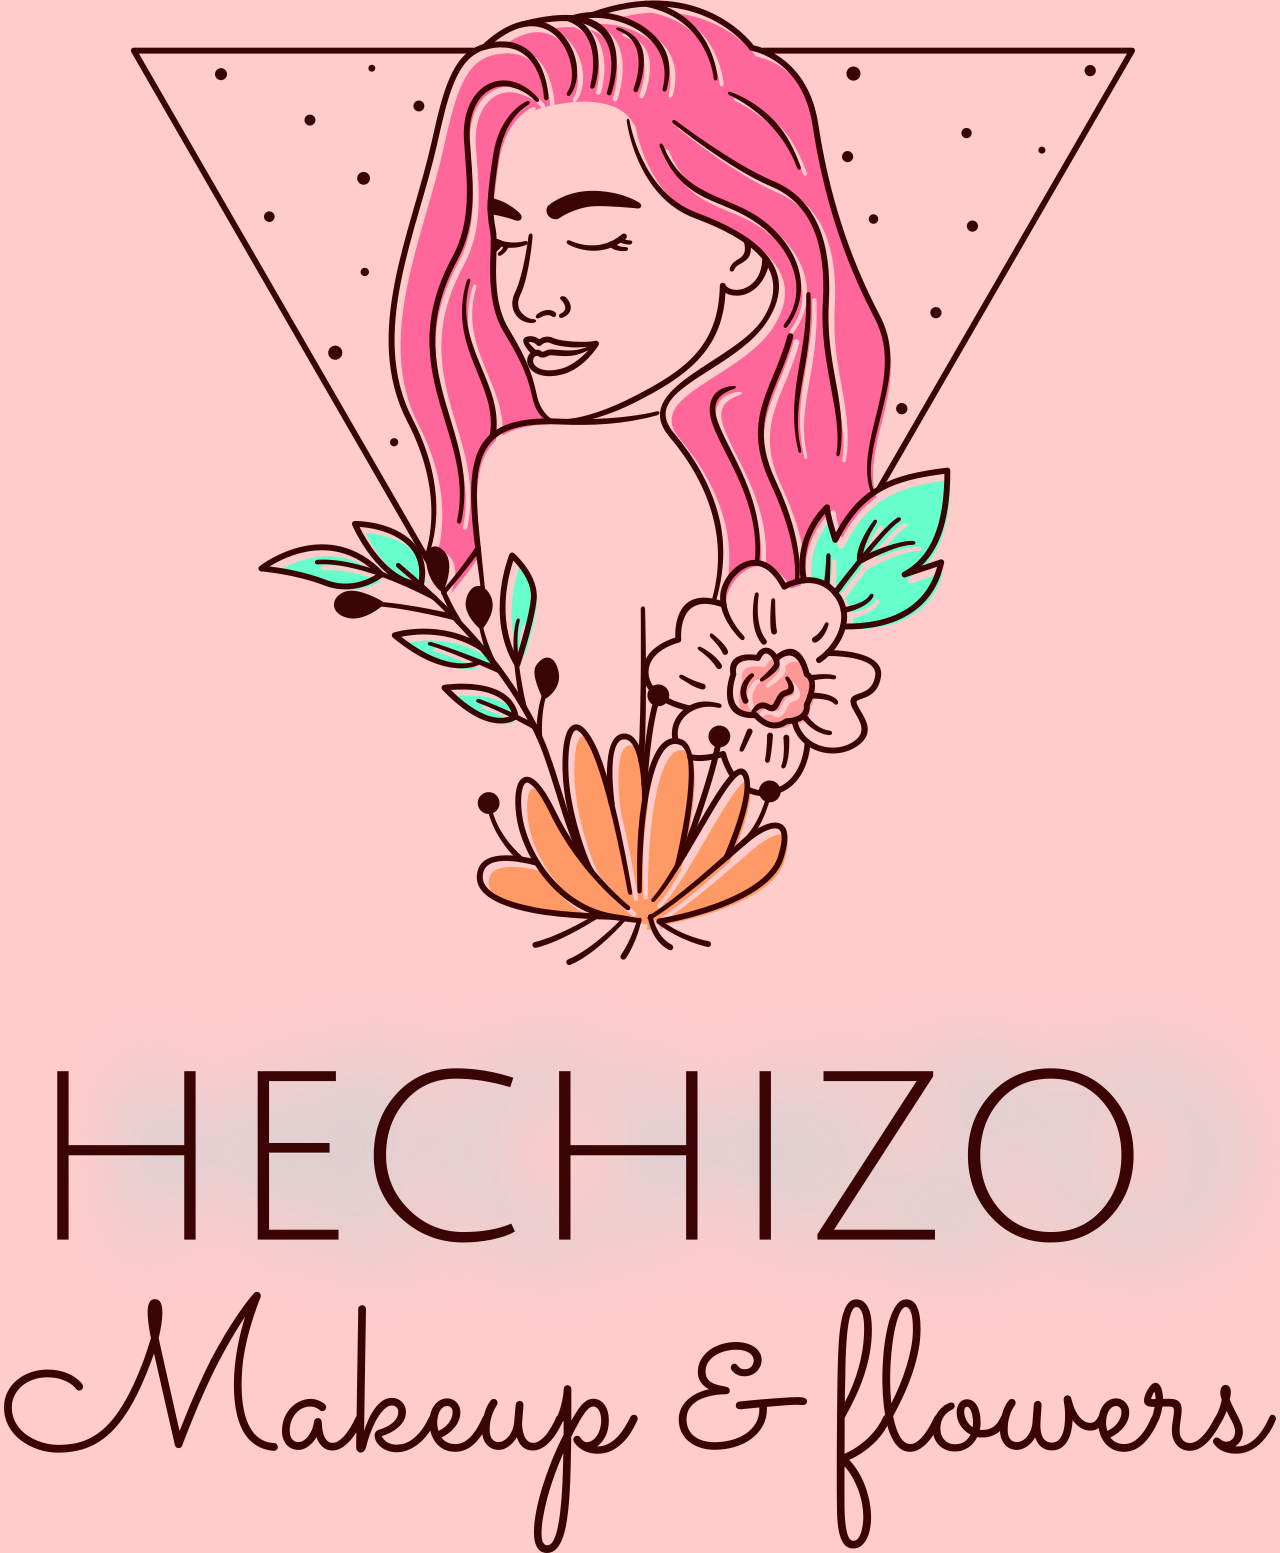 HECHIZO 's logo